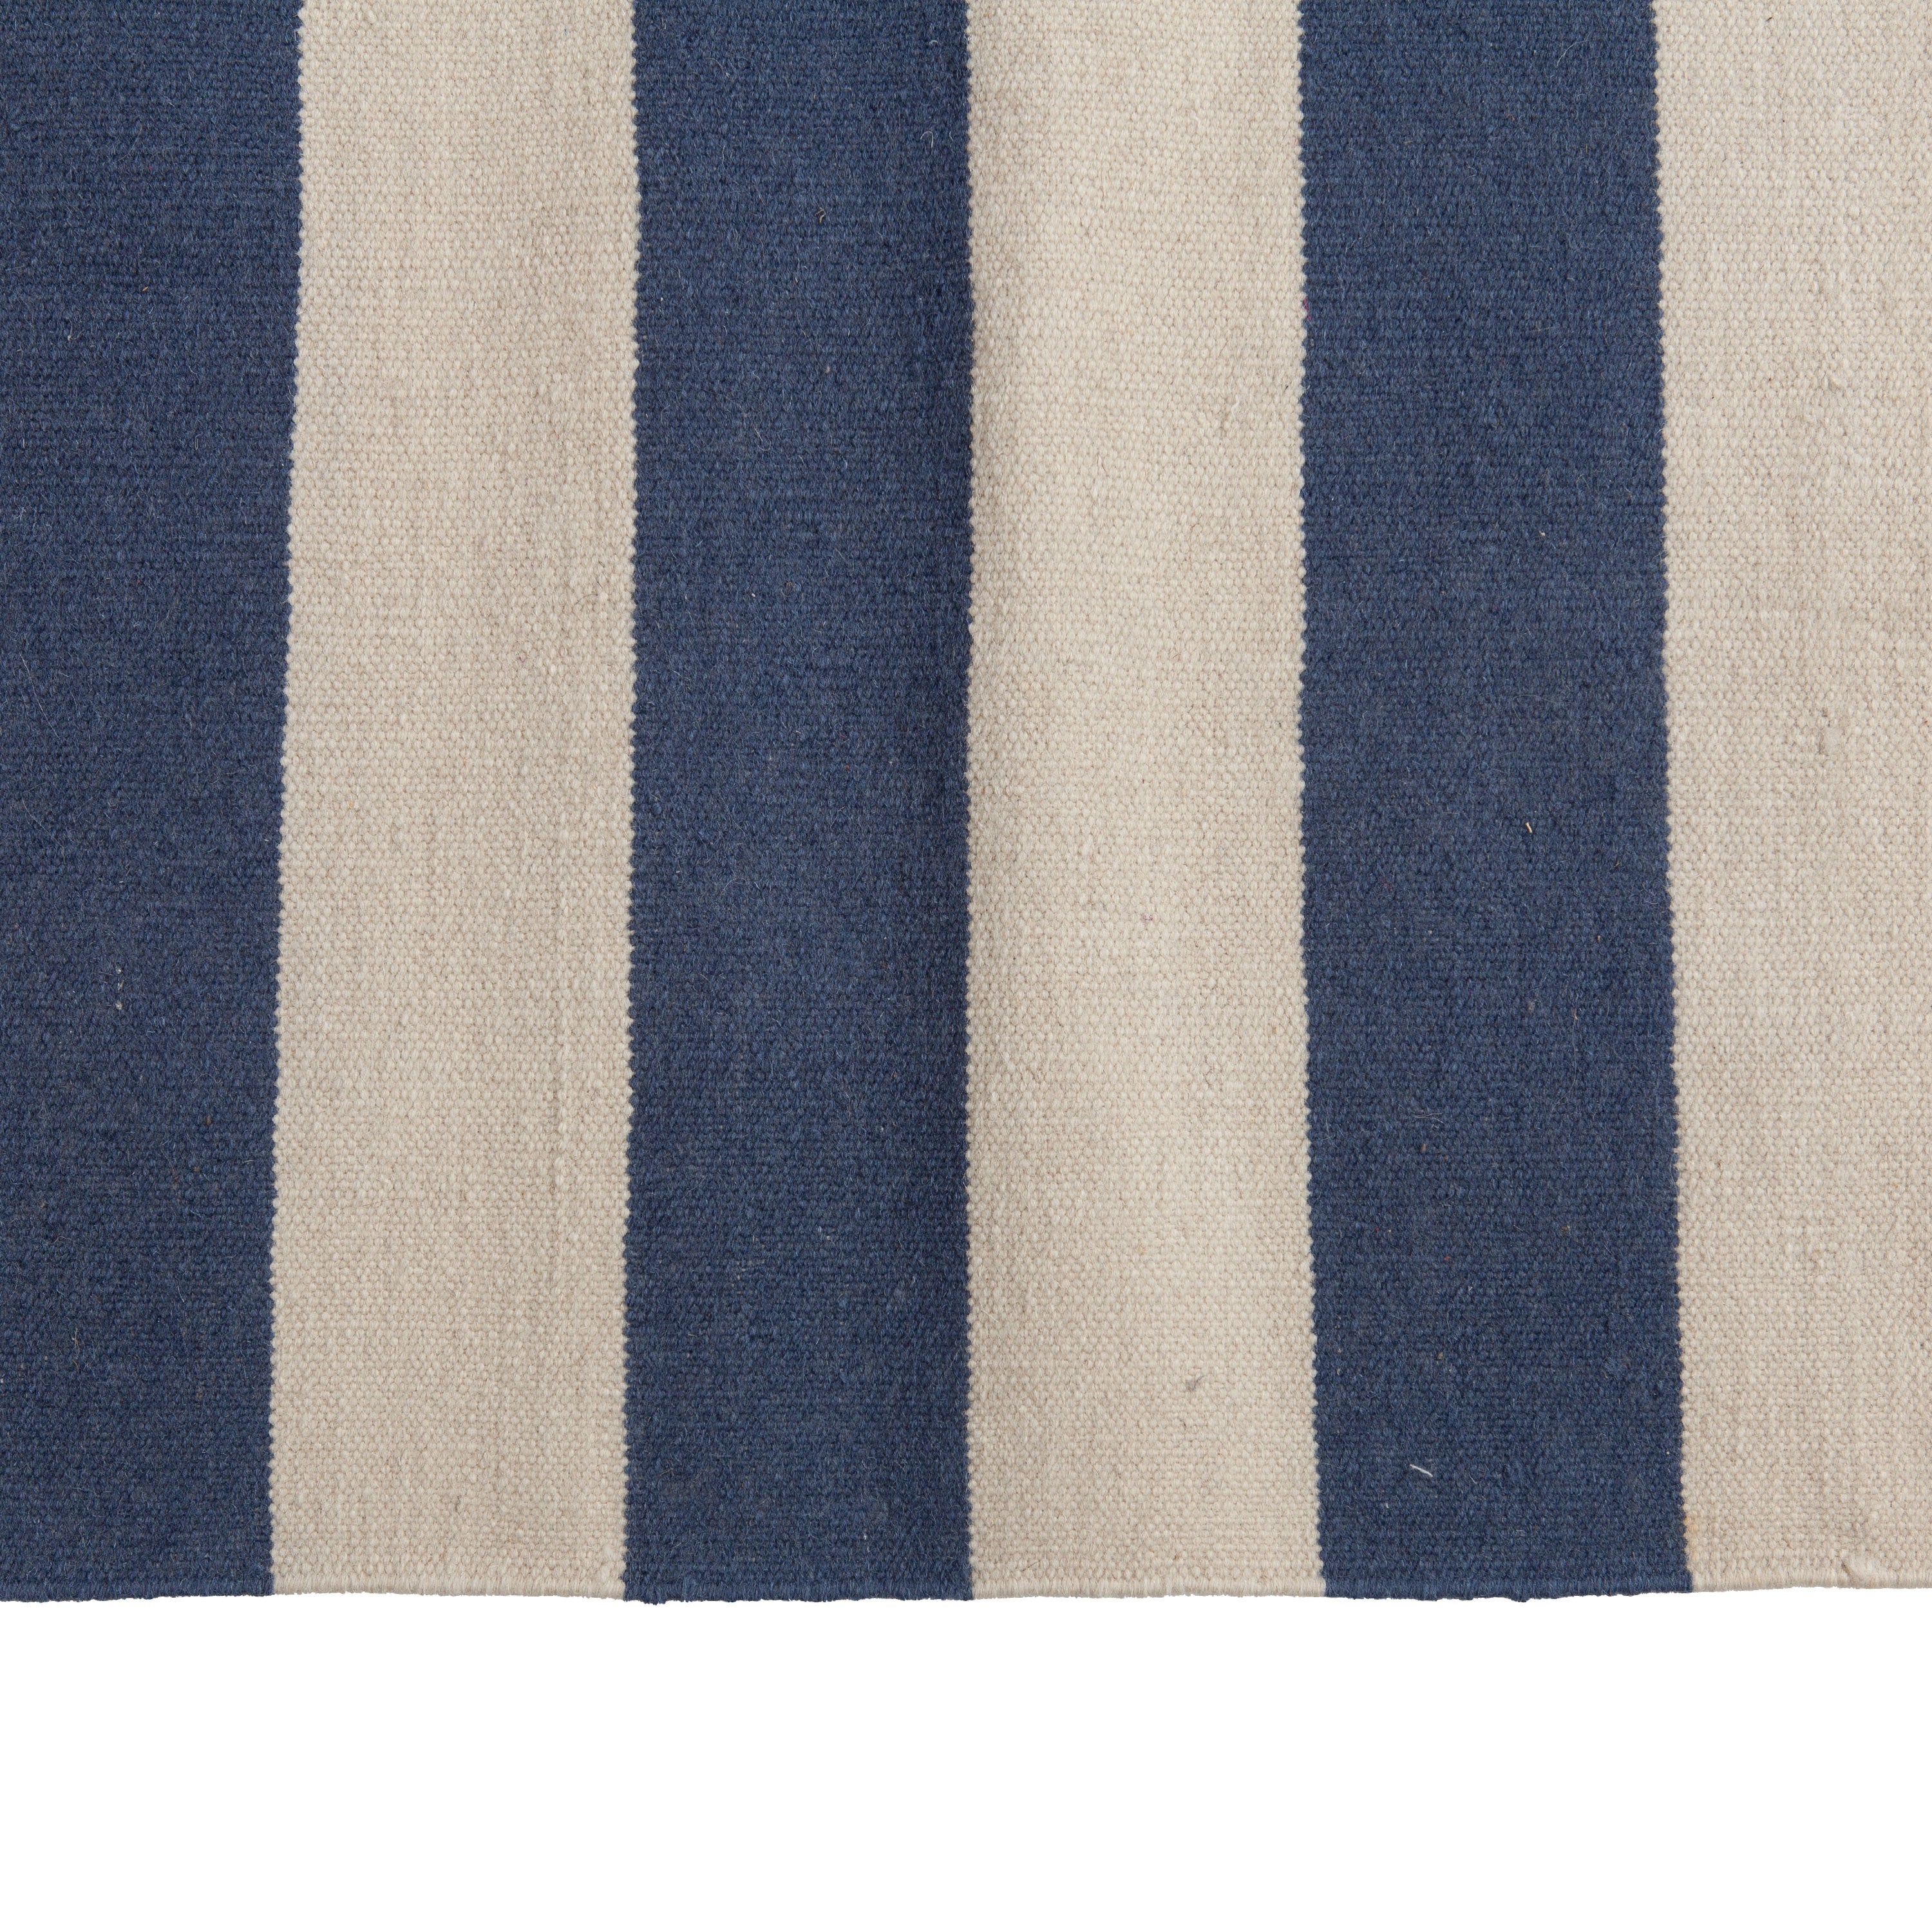 Blue Flatweave Wool Rug - 7'6" x 9'6" Default Title